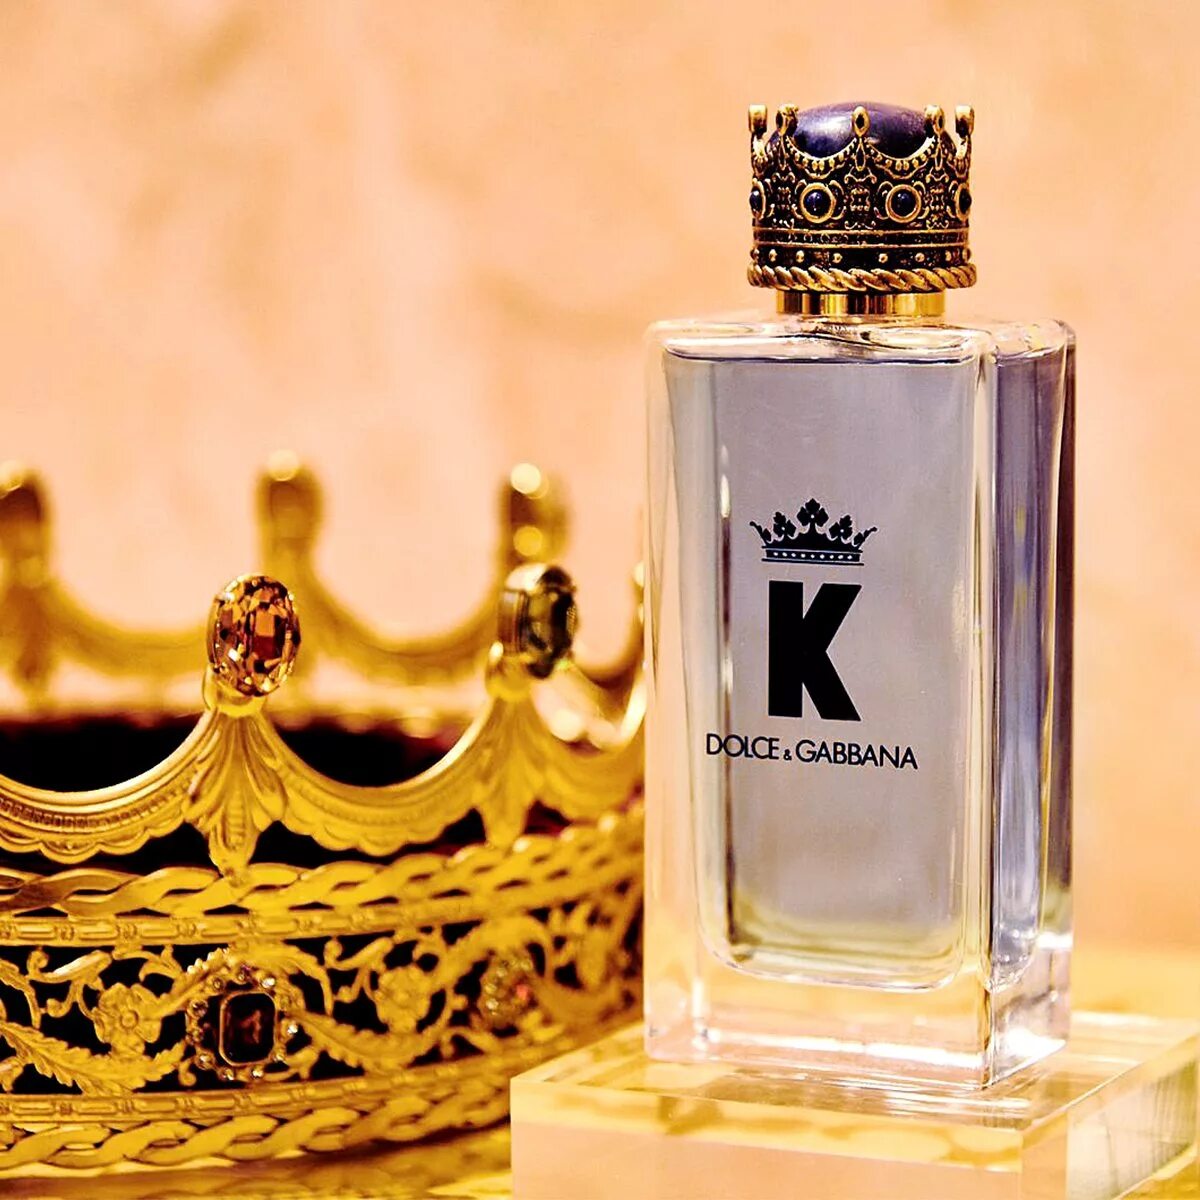 Dolce gabbana вода k. Dolce Gabbana King 100ml. Dolce Gabbana King Parfum. Dolce & Gabbana King Eau de Parfum 100 ml. Dolce Gabbana k King 100ml EDT.